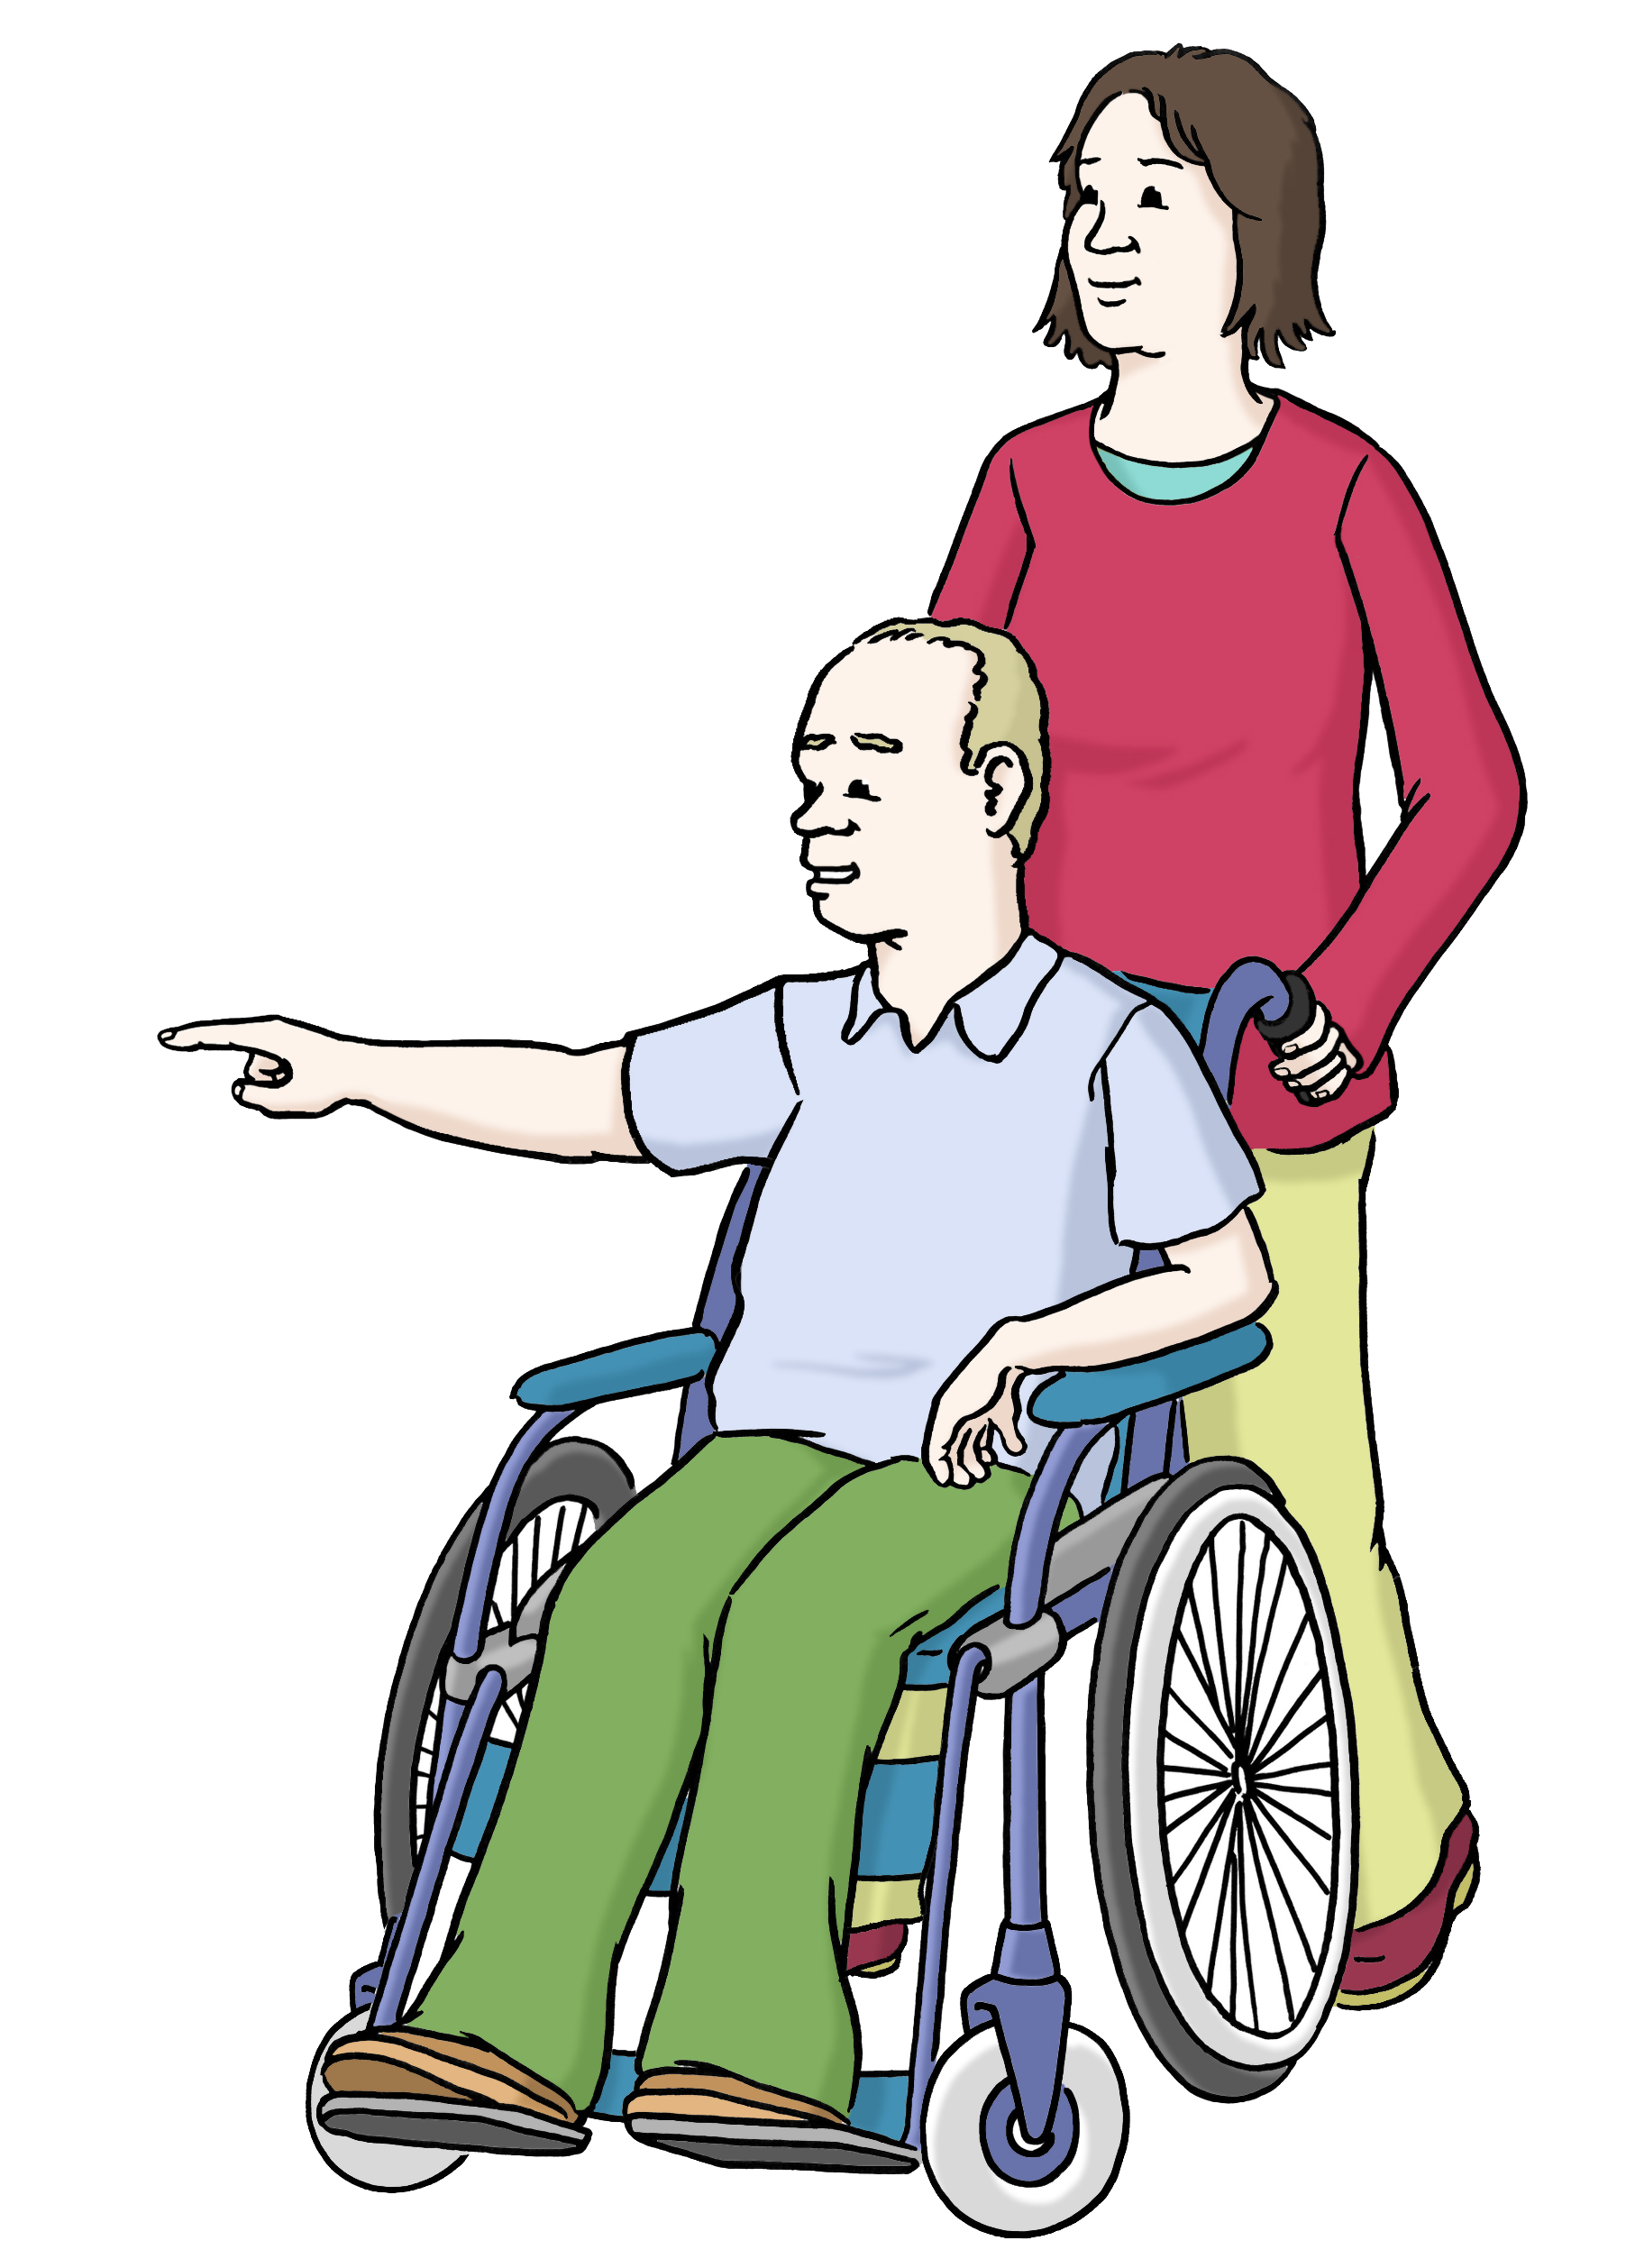 Bildbeschreibung: Eine Frau schiebt einen Mann im Rollstuhl. Der Mann zeigt ihr, wohin er geschoben werden möchte.